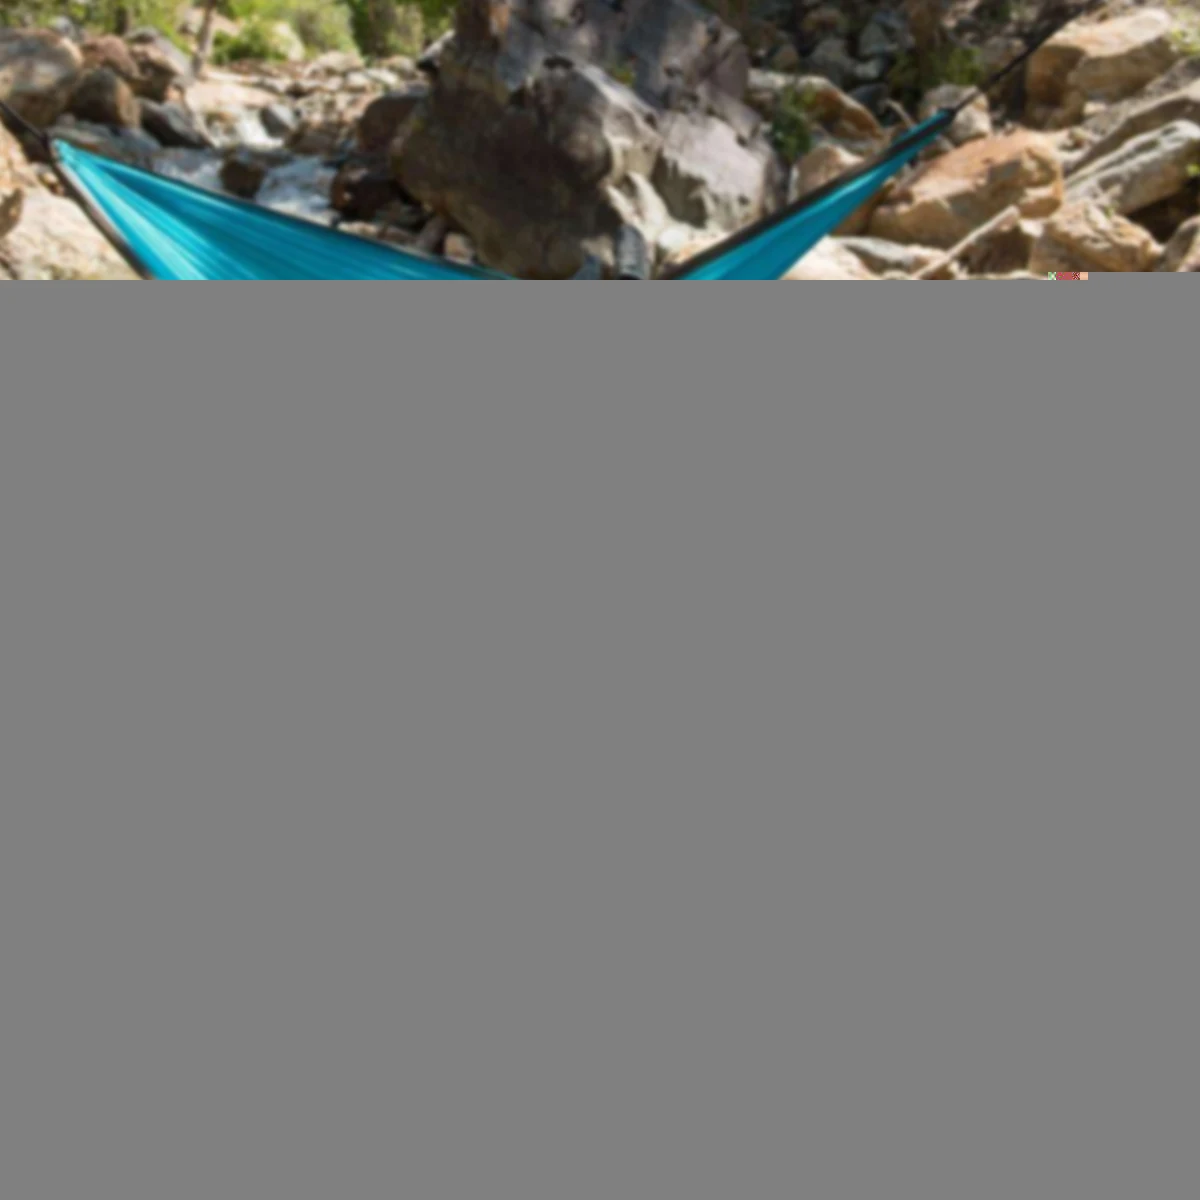 Двойной человек гамак палатка портативный Открытый путешествия Hangmat Canping пеший туризм гамак с москитной сеткой сад дерево висит кровать